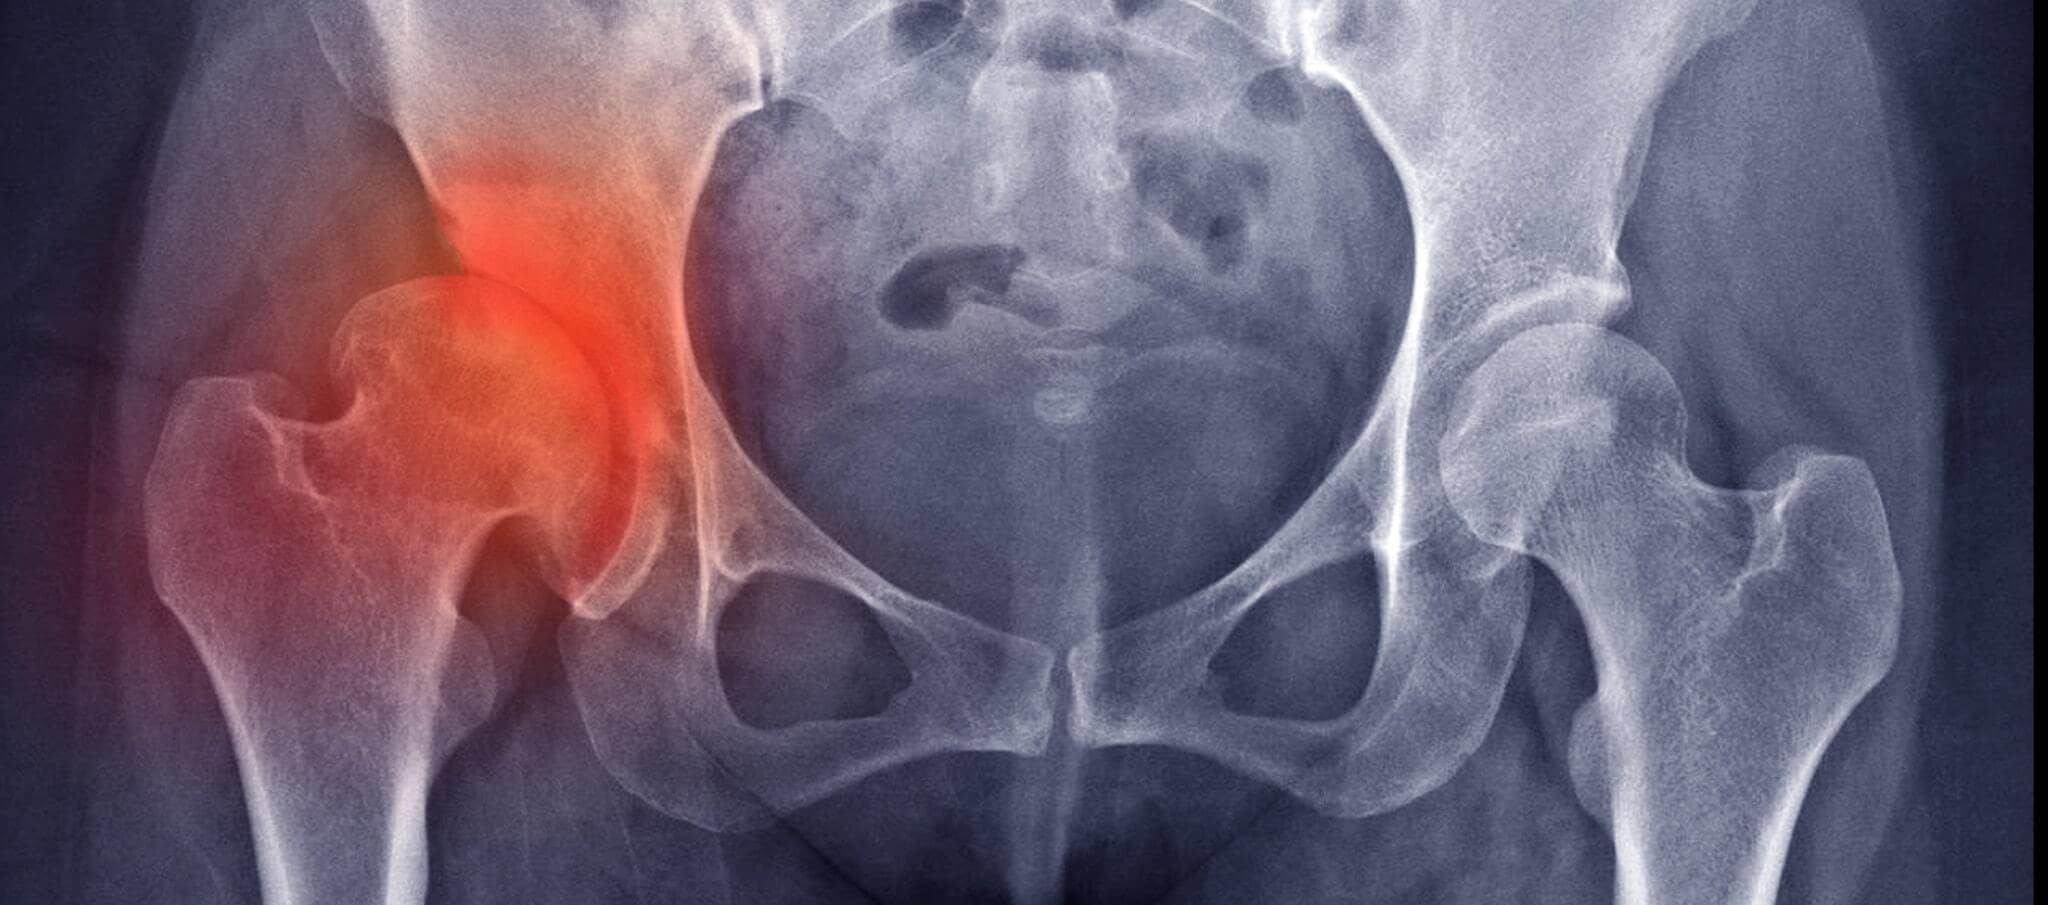 Comment soulager l'arthrose de la hanche ?, Dr Paillard